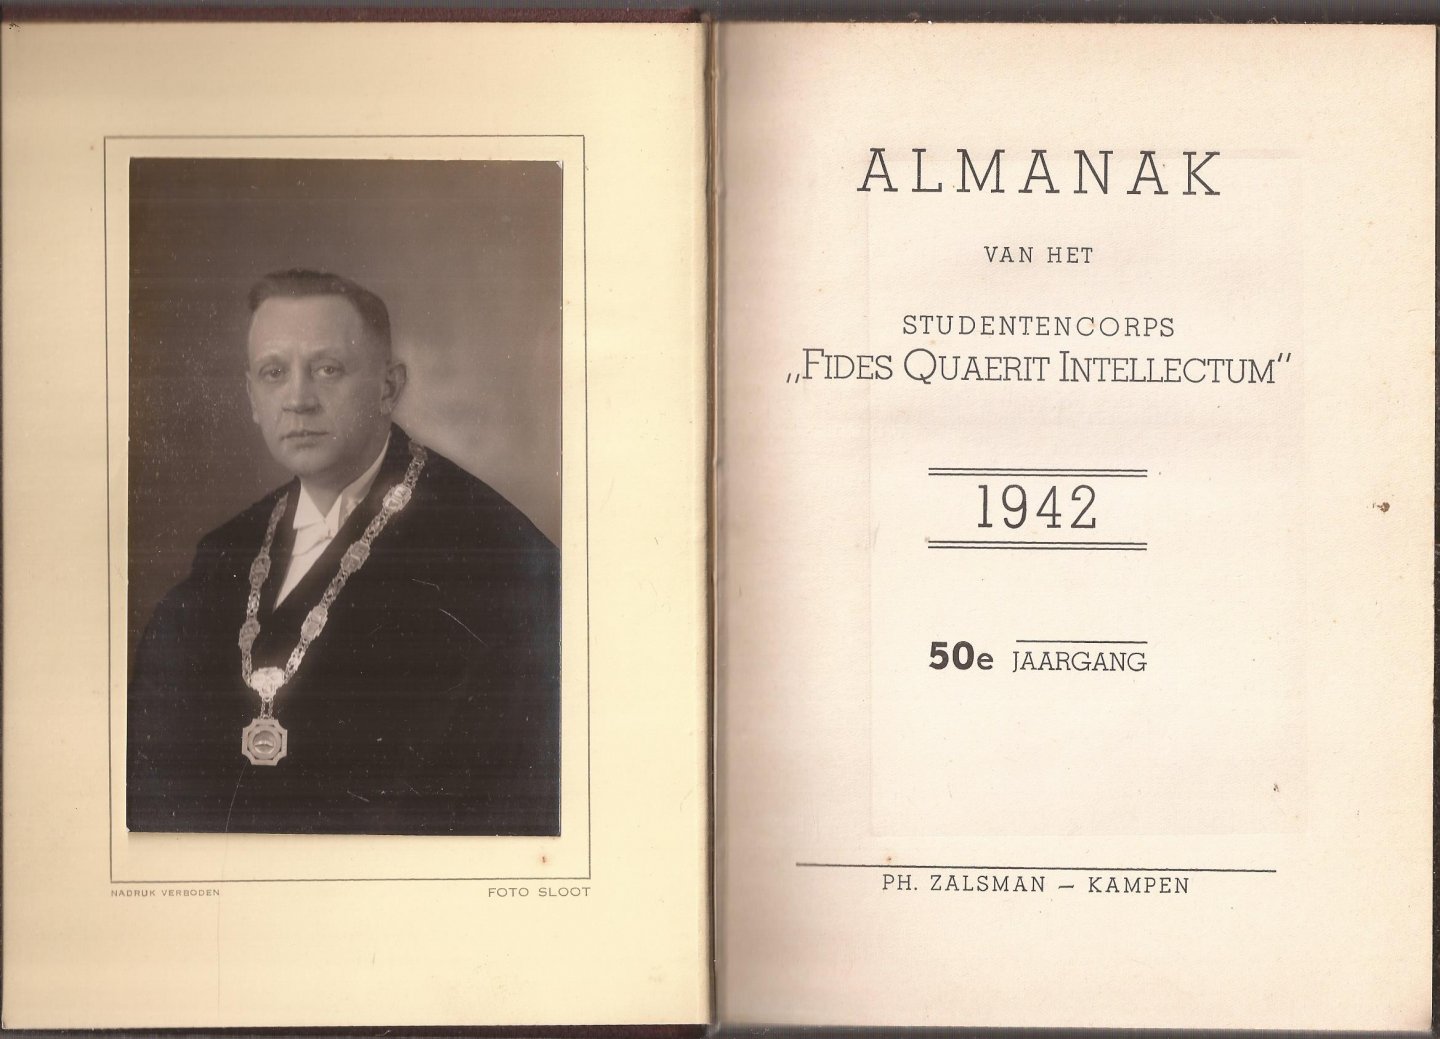  - Almanak van het studentencorps "Fides Quærit Intellectum" voor het jaar 1942. 50e Jaargang.